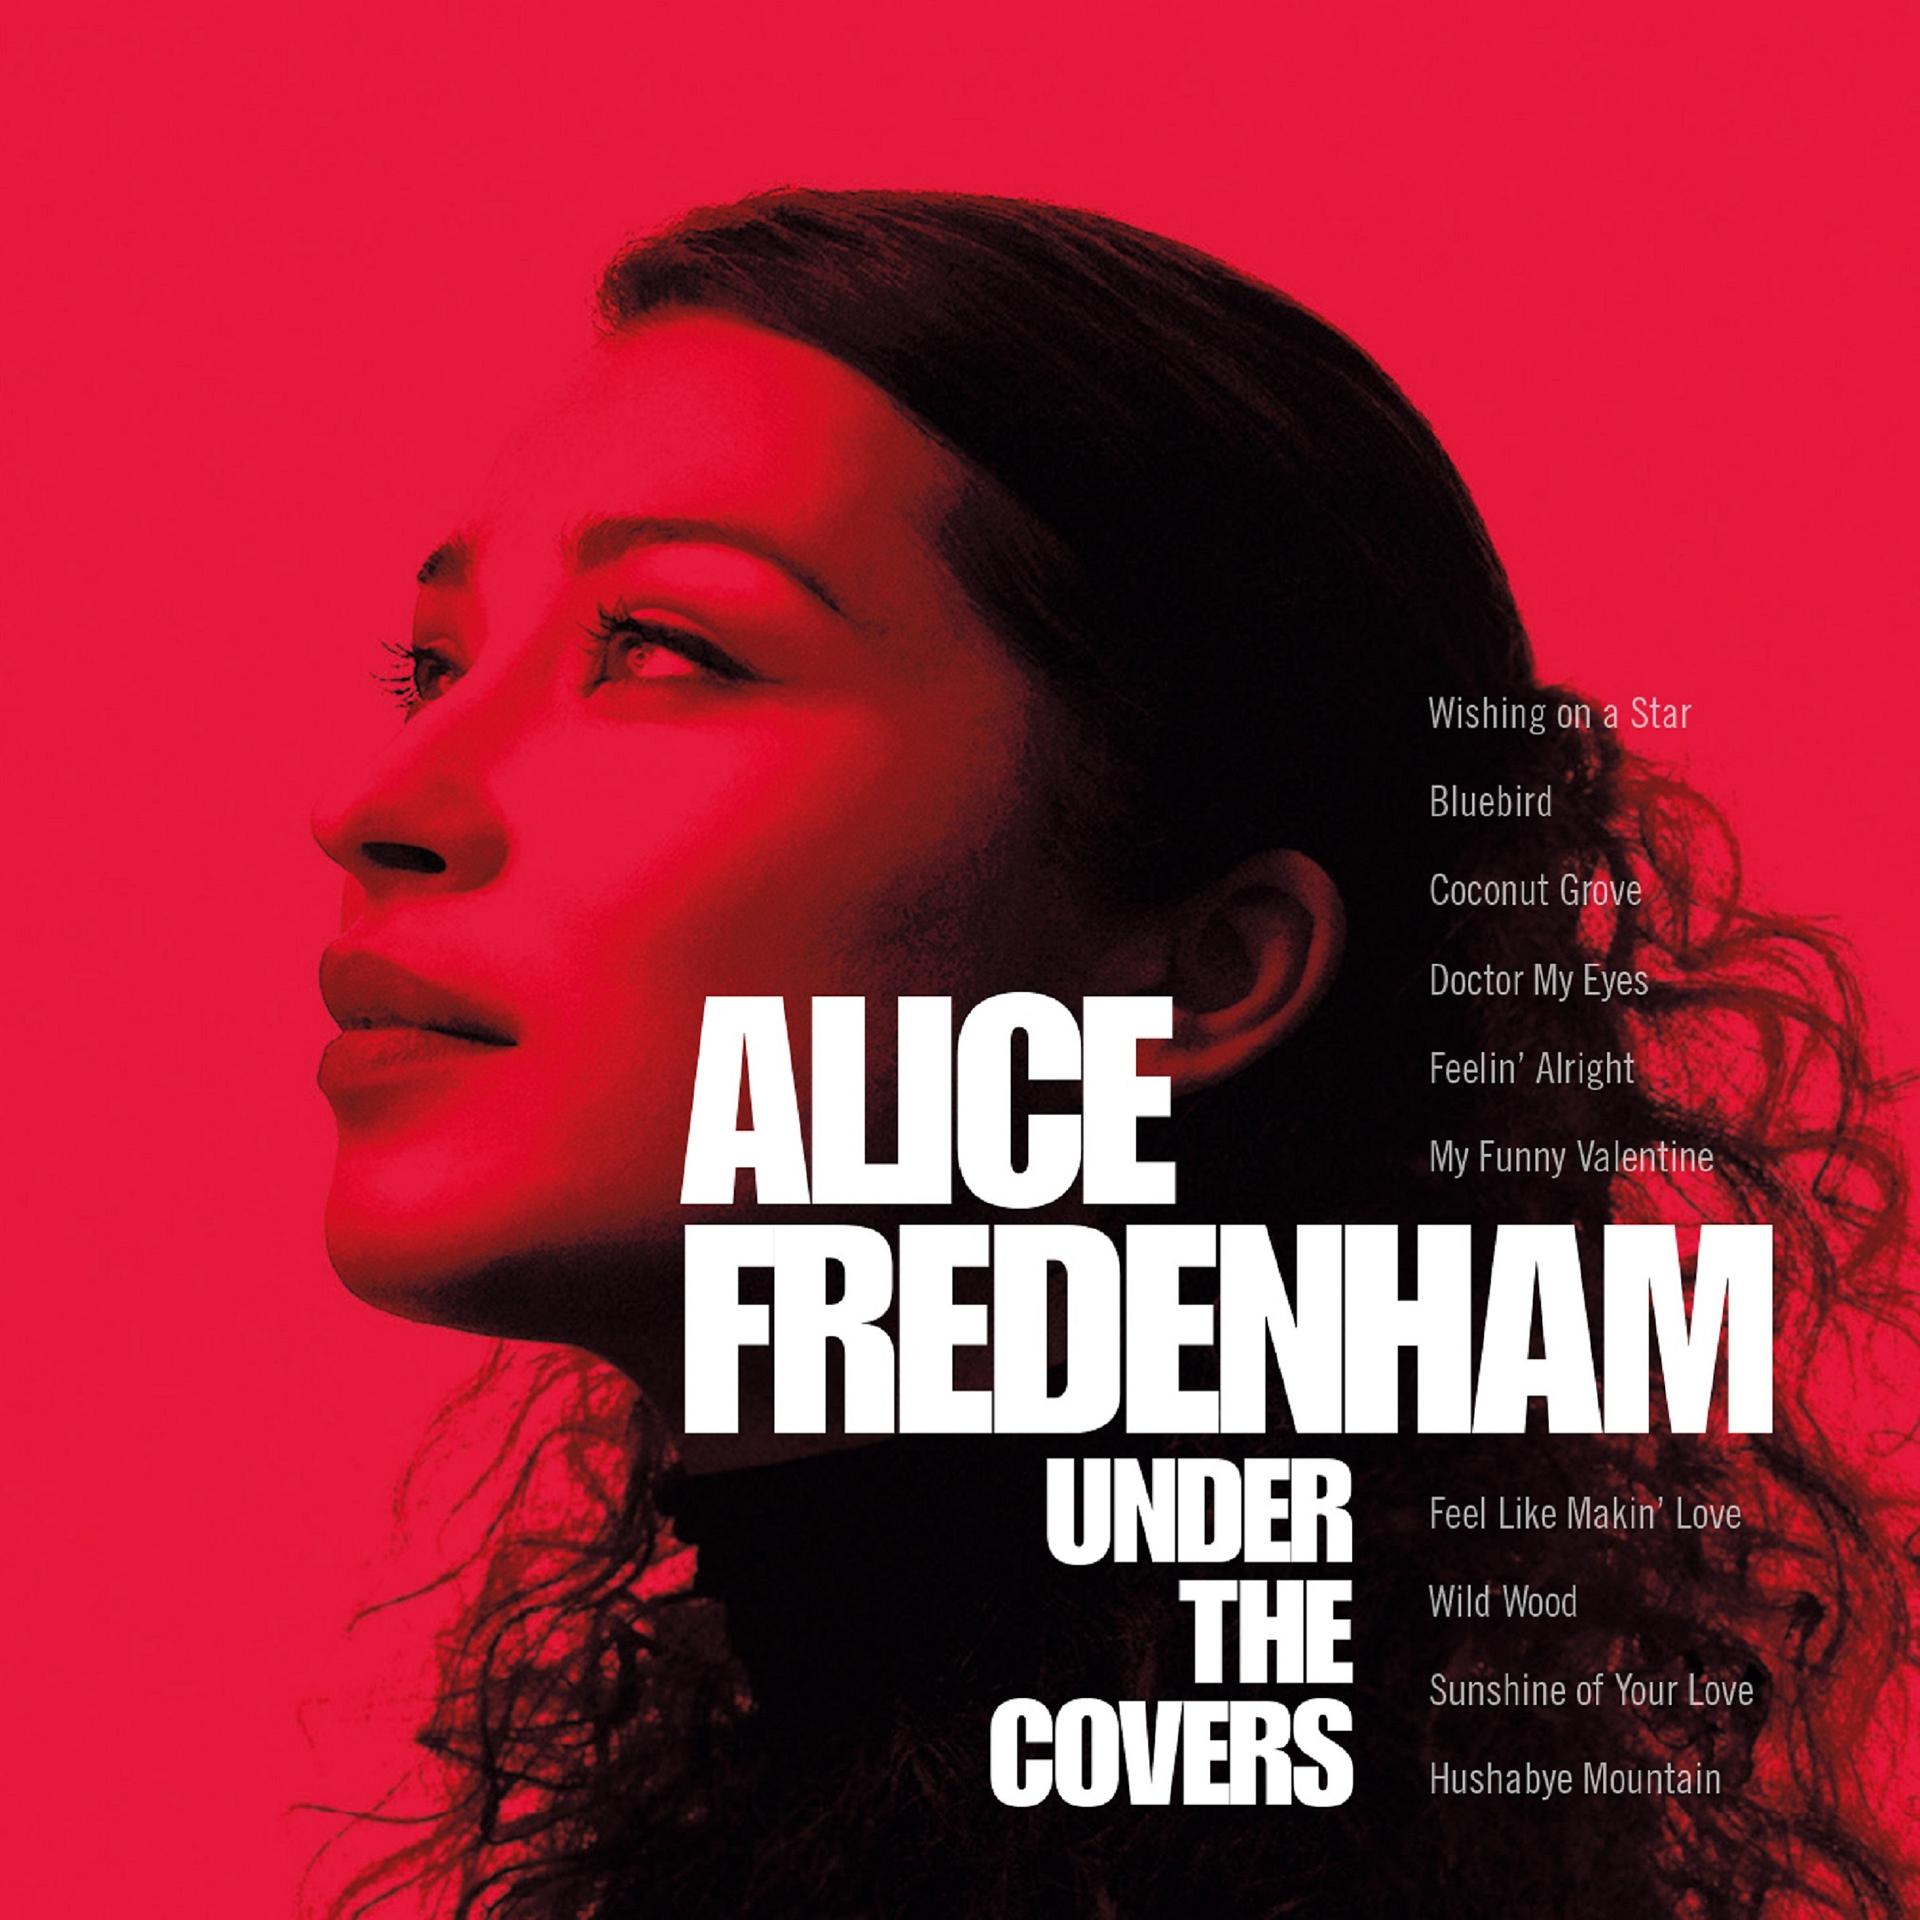 Feelings undercover. Alice Fredenham – under the Covers (2017). Alice Fredenham Элис Фреденхам. Alice Valentine. Sunshine of your Love обложка.